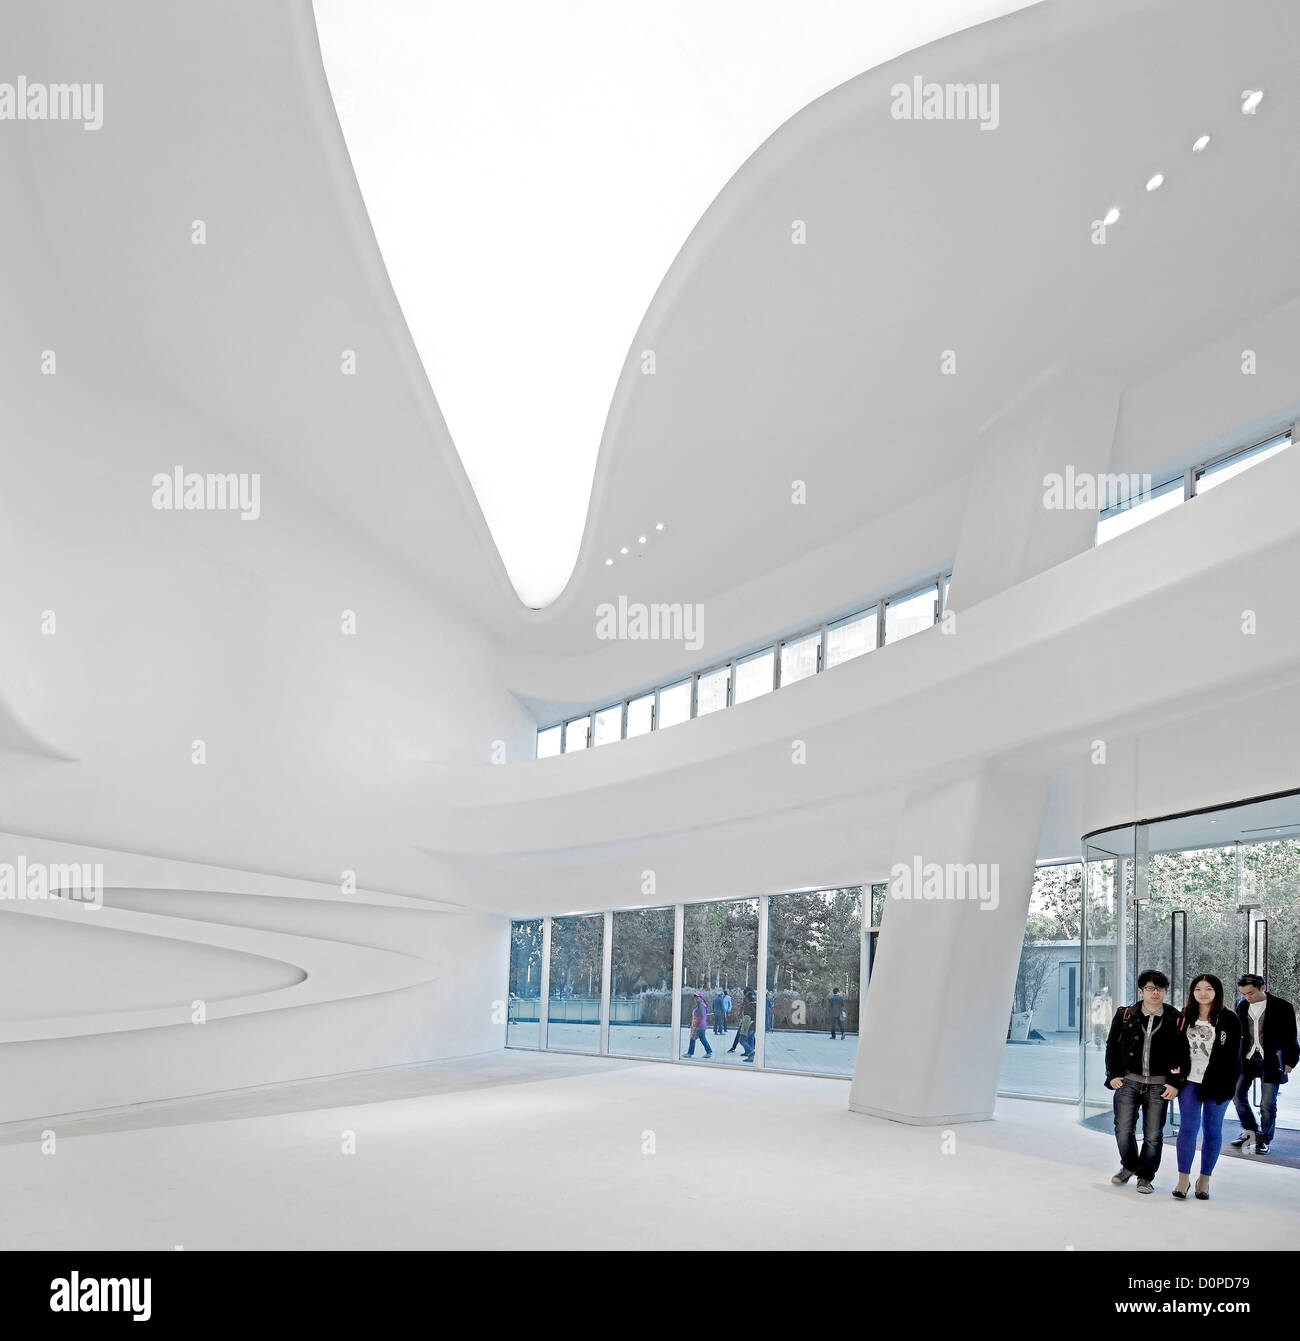 Galaxy-Soho, Peking, China. Architekt: Zaha Hadid Architects, 2012. Gebogene Eingang Atrium. Stockfoto